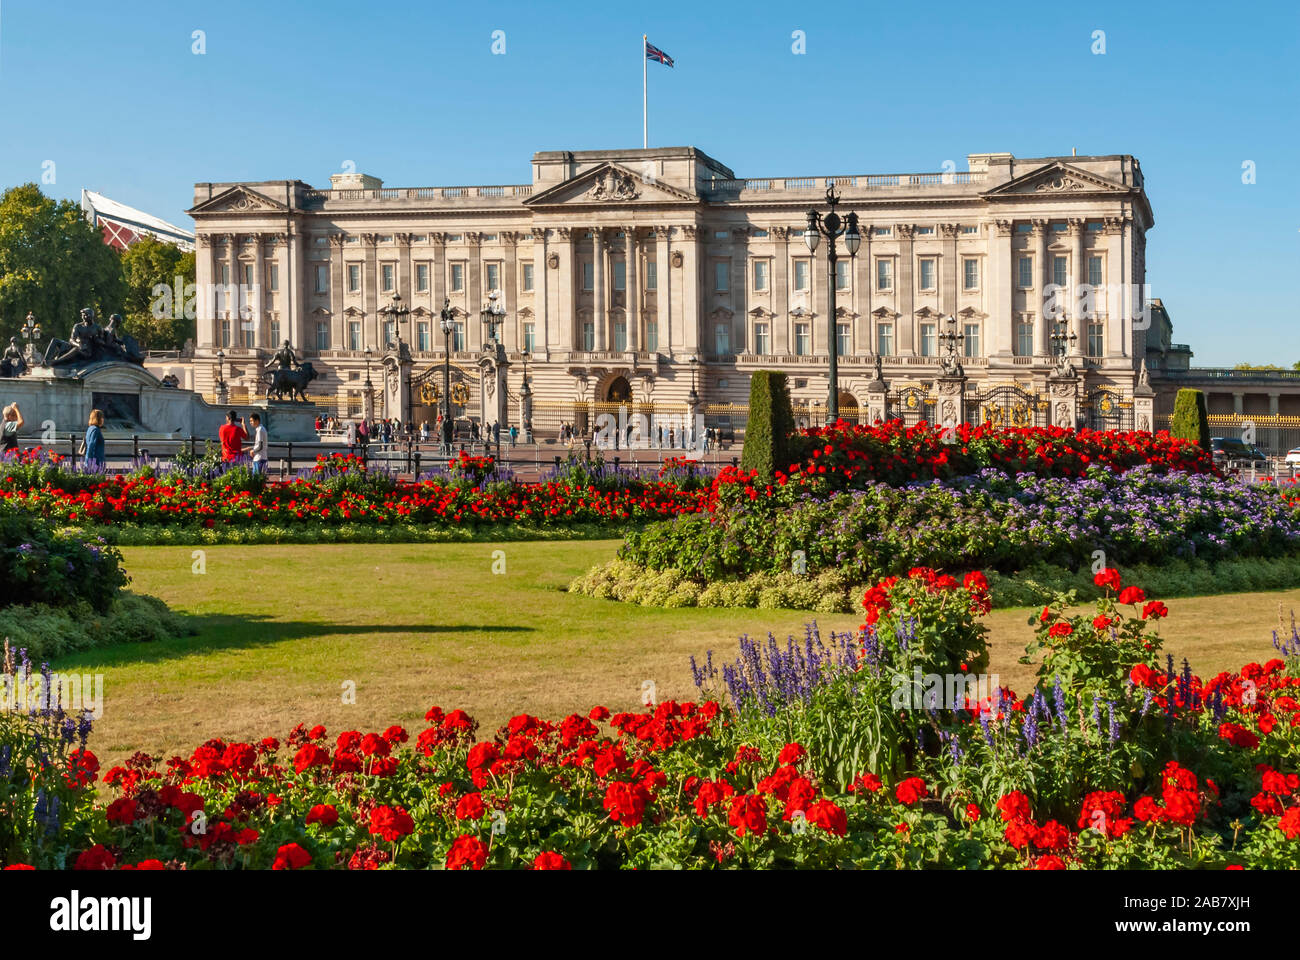 Les géraniums, le palais de Buckingham, Londres, Angleterre, Royaume-Uni, Europe Banque D'Images